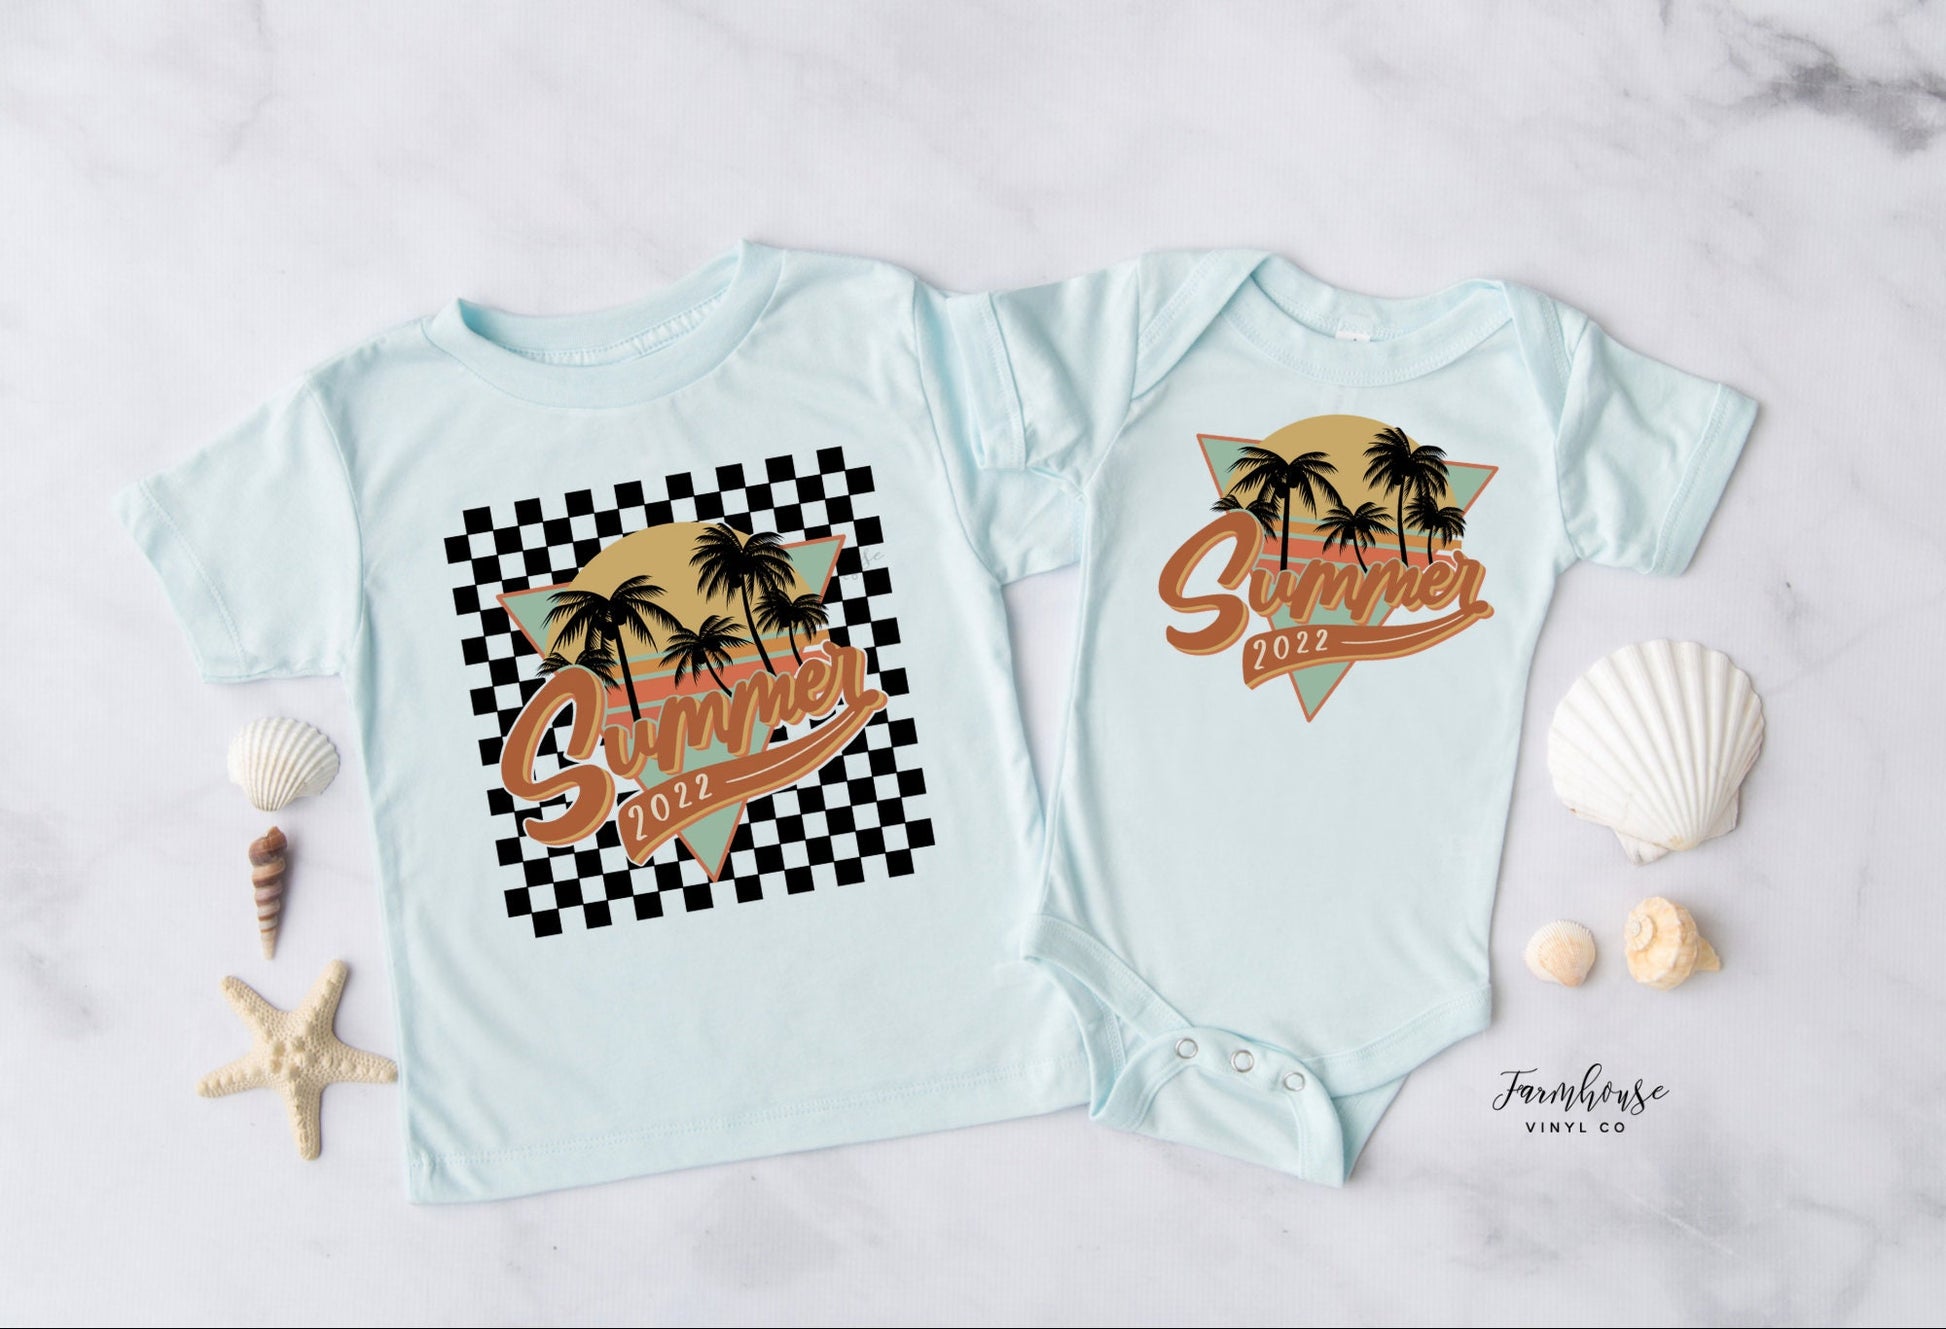 Summer 2022 Checker Shirt / Trendy shirt / Children Summer Tees / Beach Trip Shirts Match / Surfing Shirt / Summer Matching Shirts - Farmhouse Vinyl Co